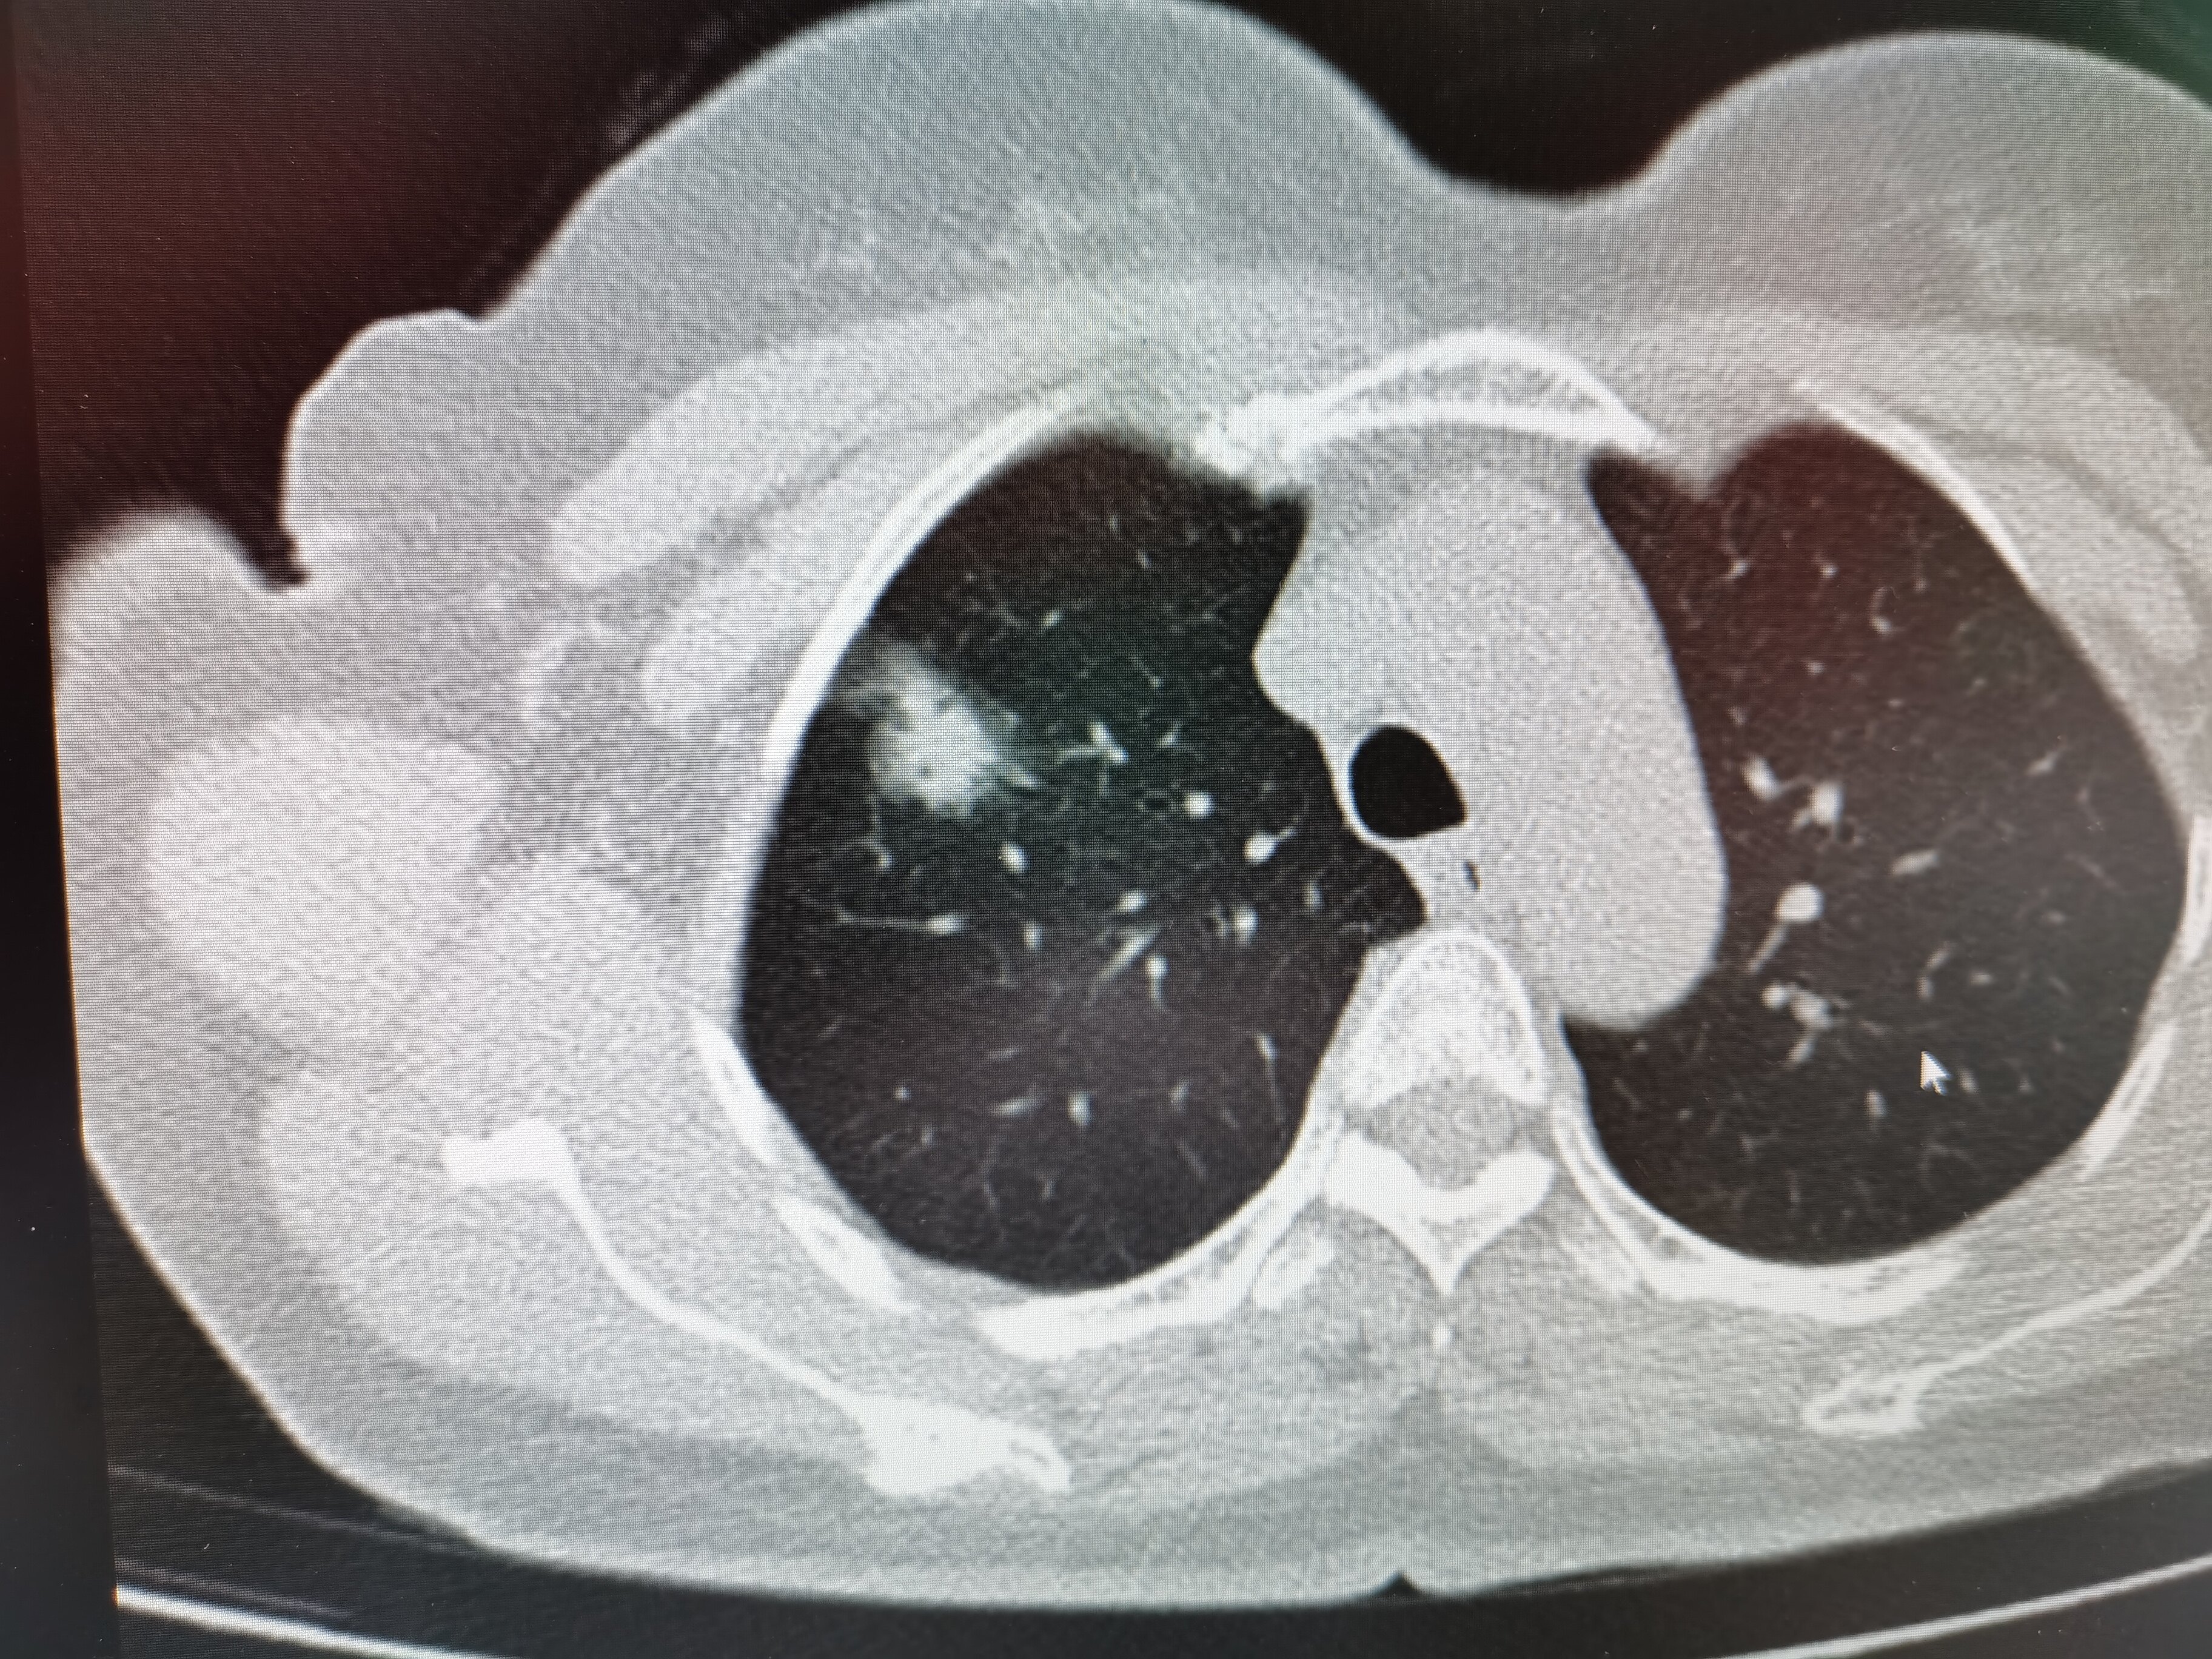 肺癌ct照片图片